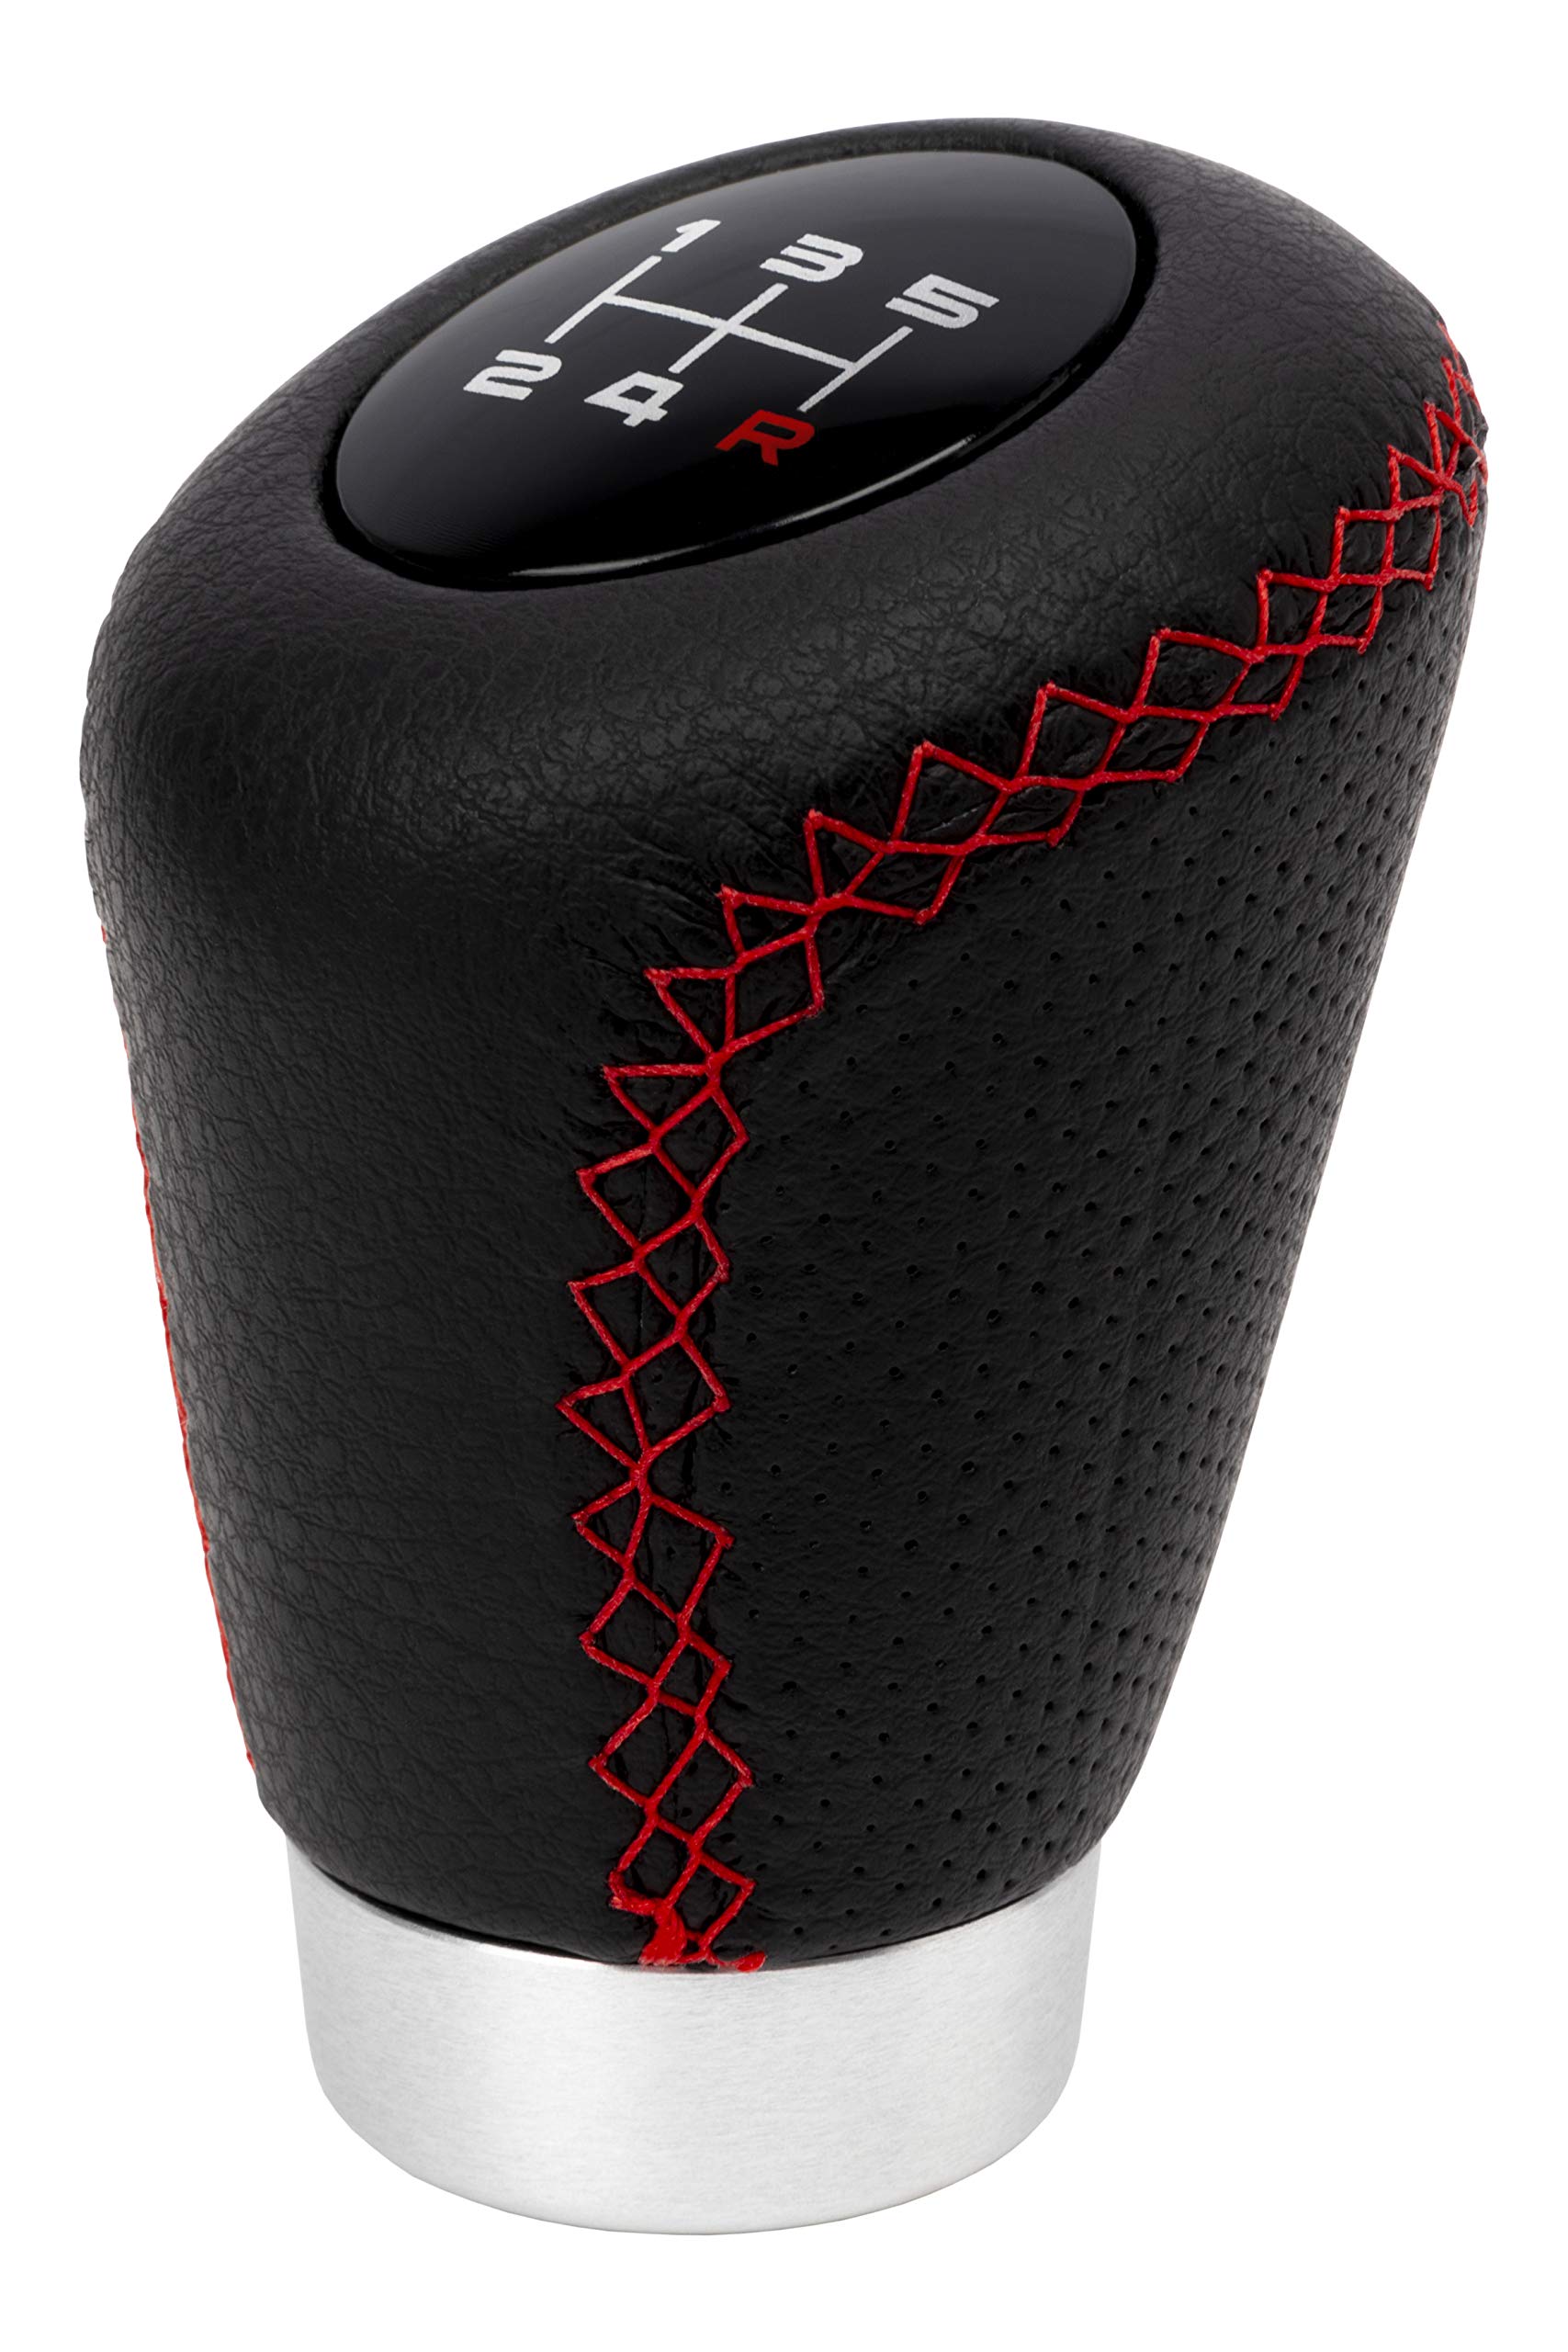 Bc Corona Sport - Kurzer Schaltknauf mit Abzug, 27 mm, Schalthebel, Leder, schwarz und rot. von Bc Corona